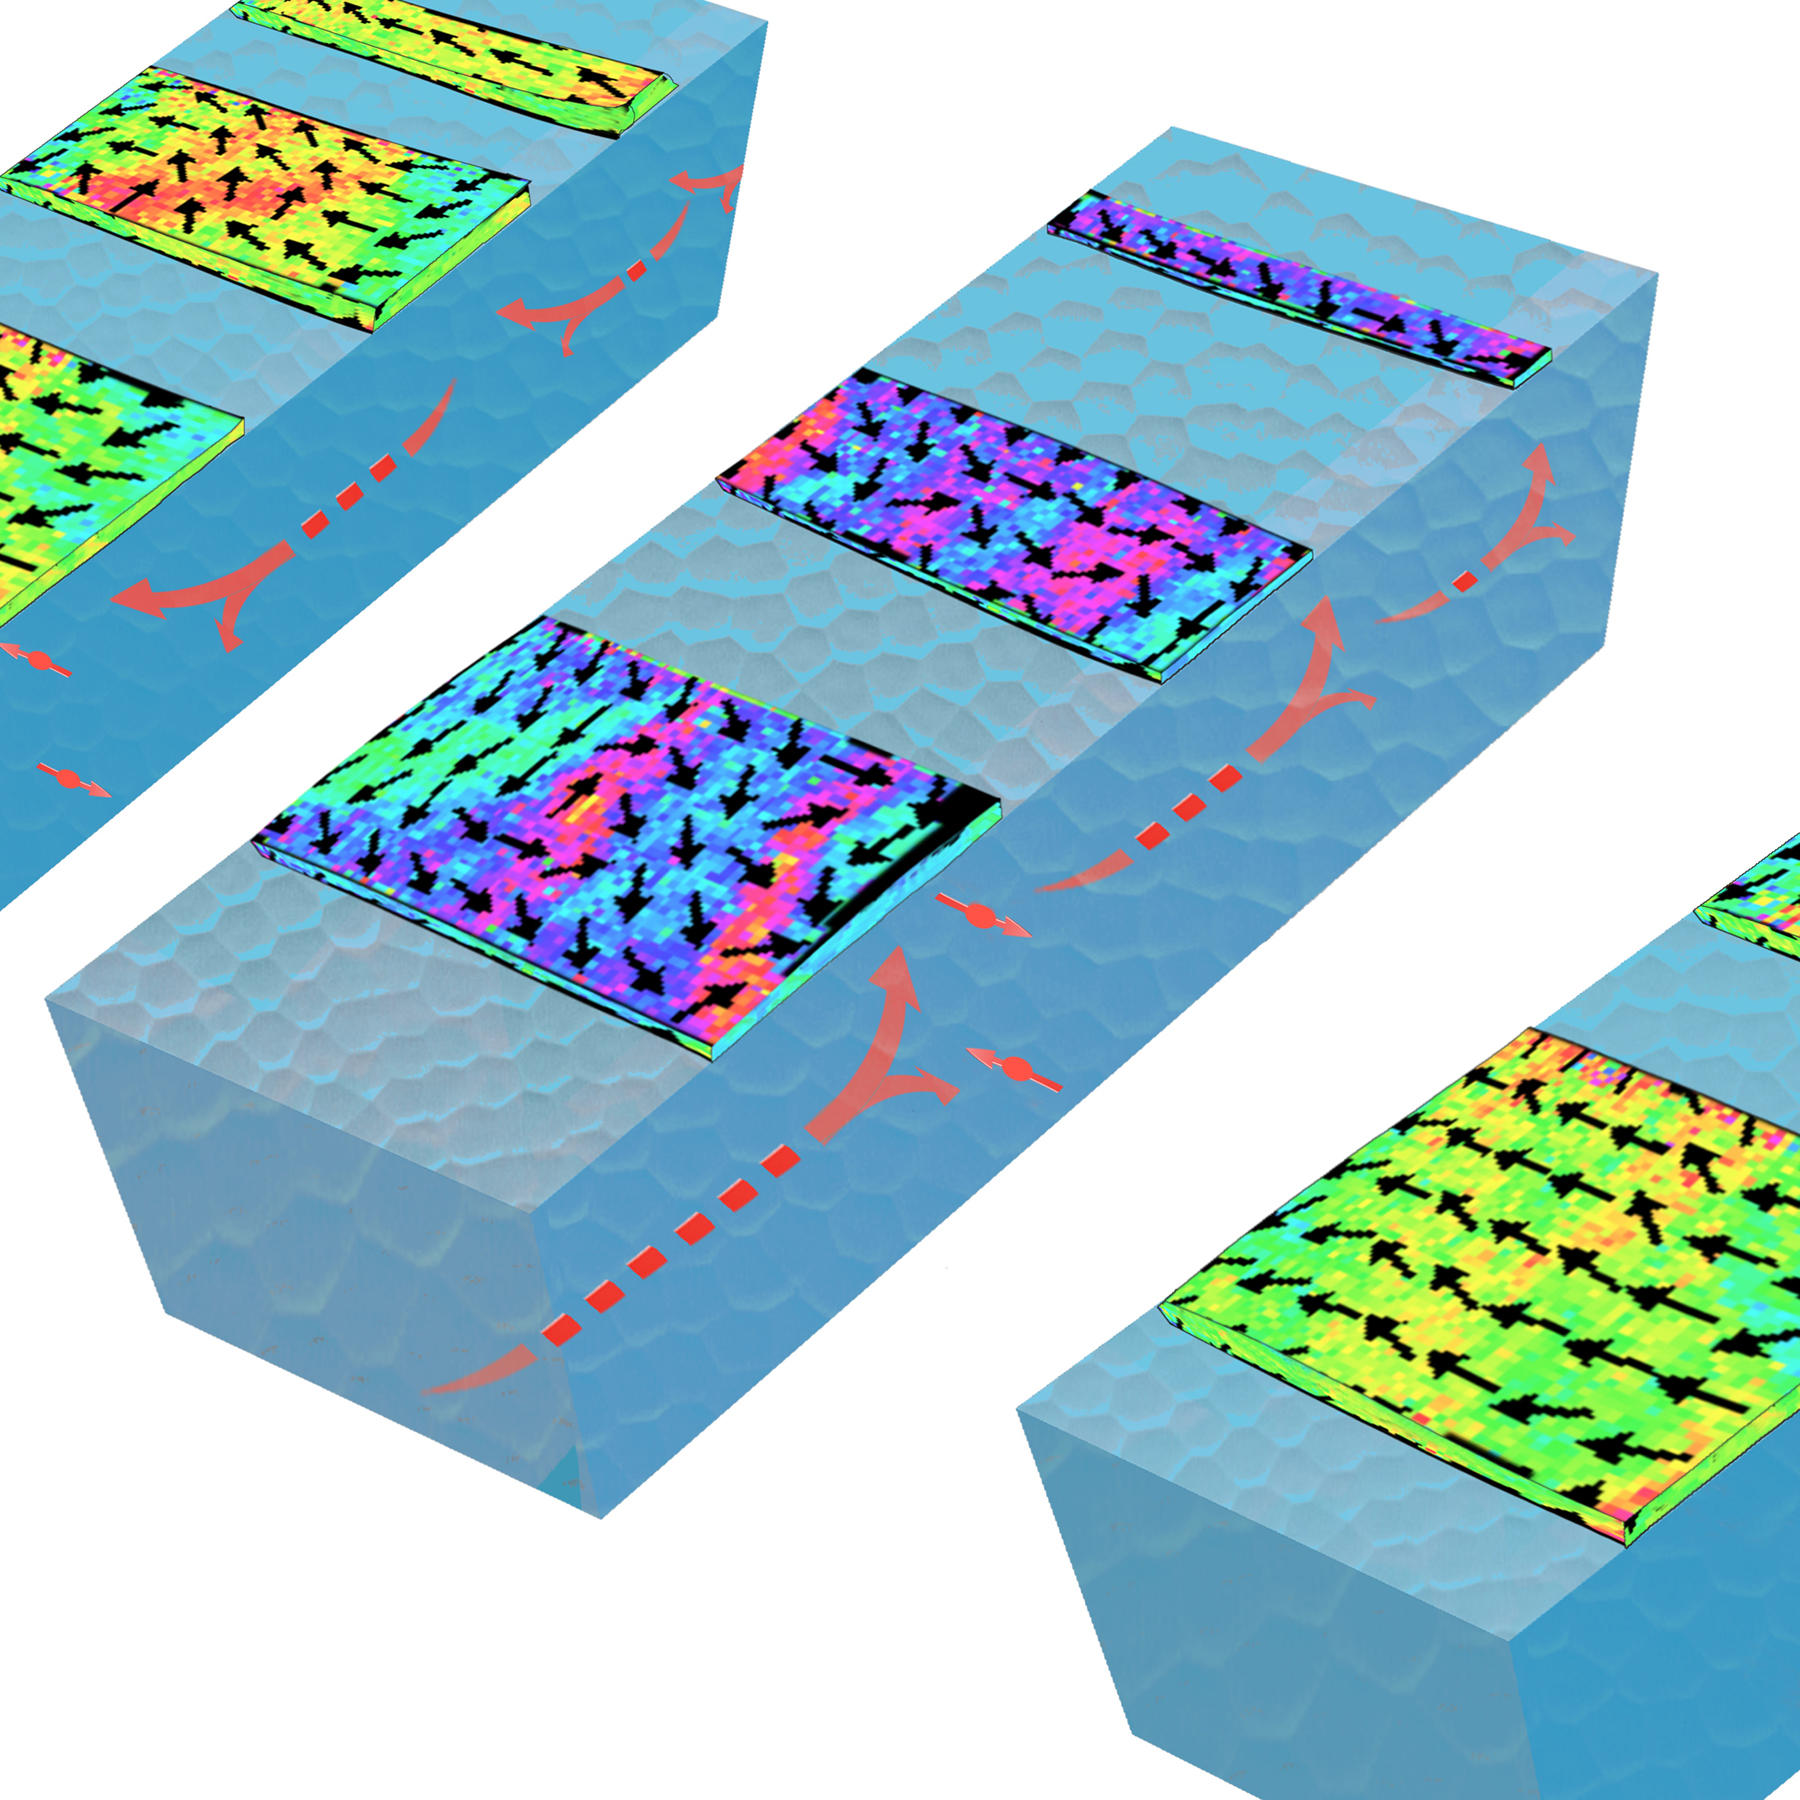 Better Nanoimages 'Spin' The Memory | NIST